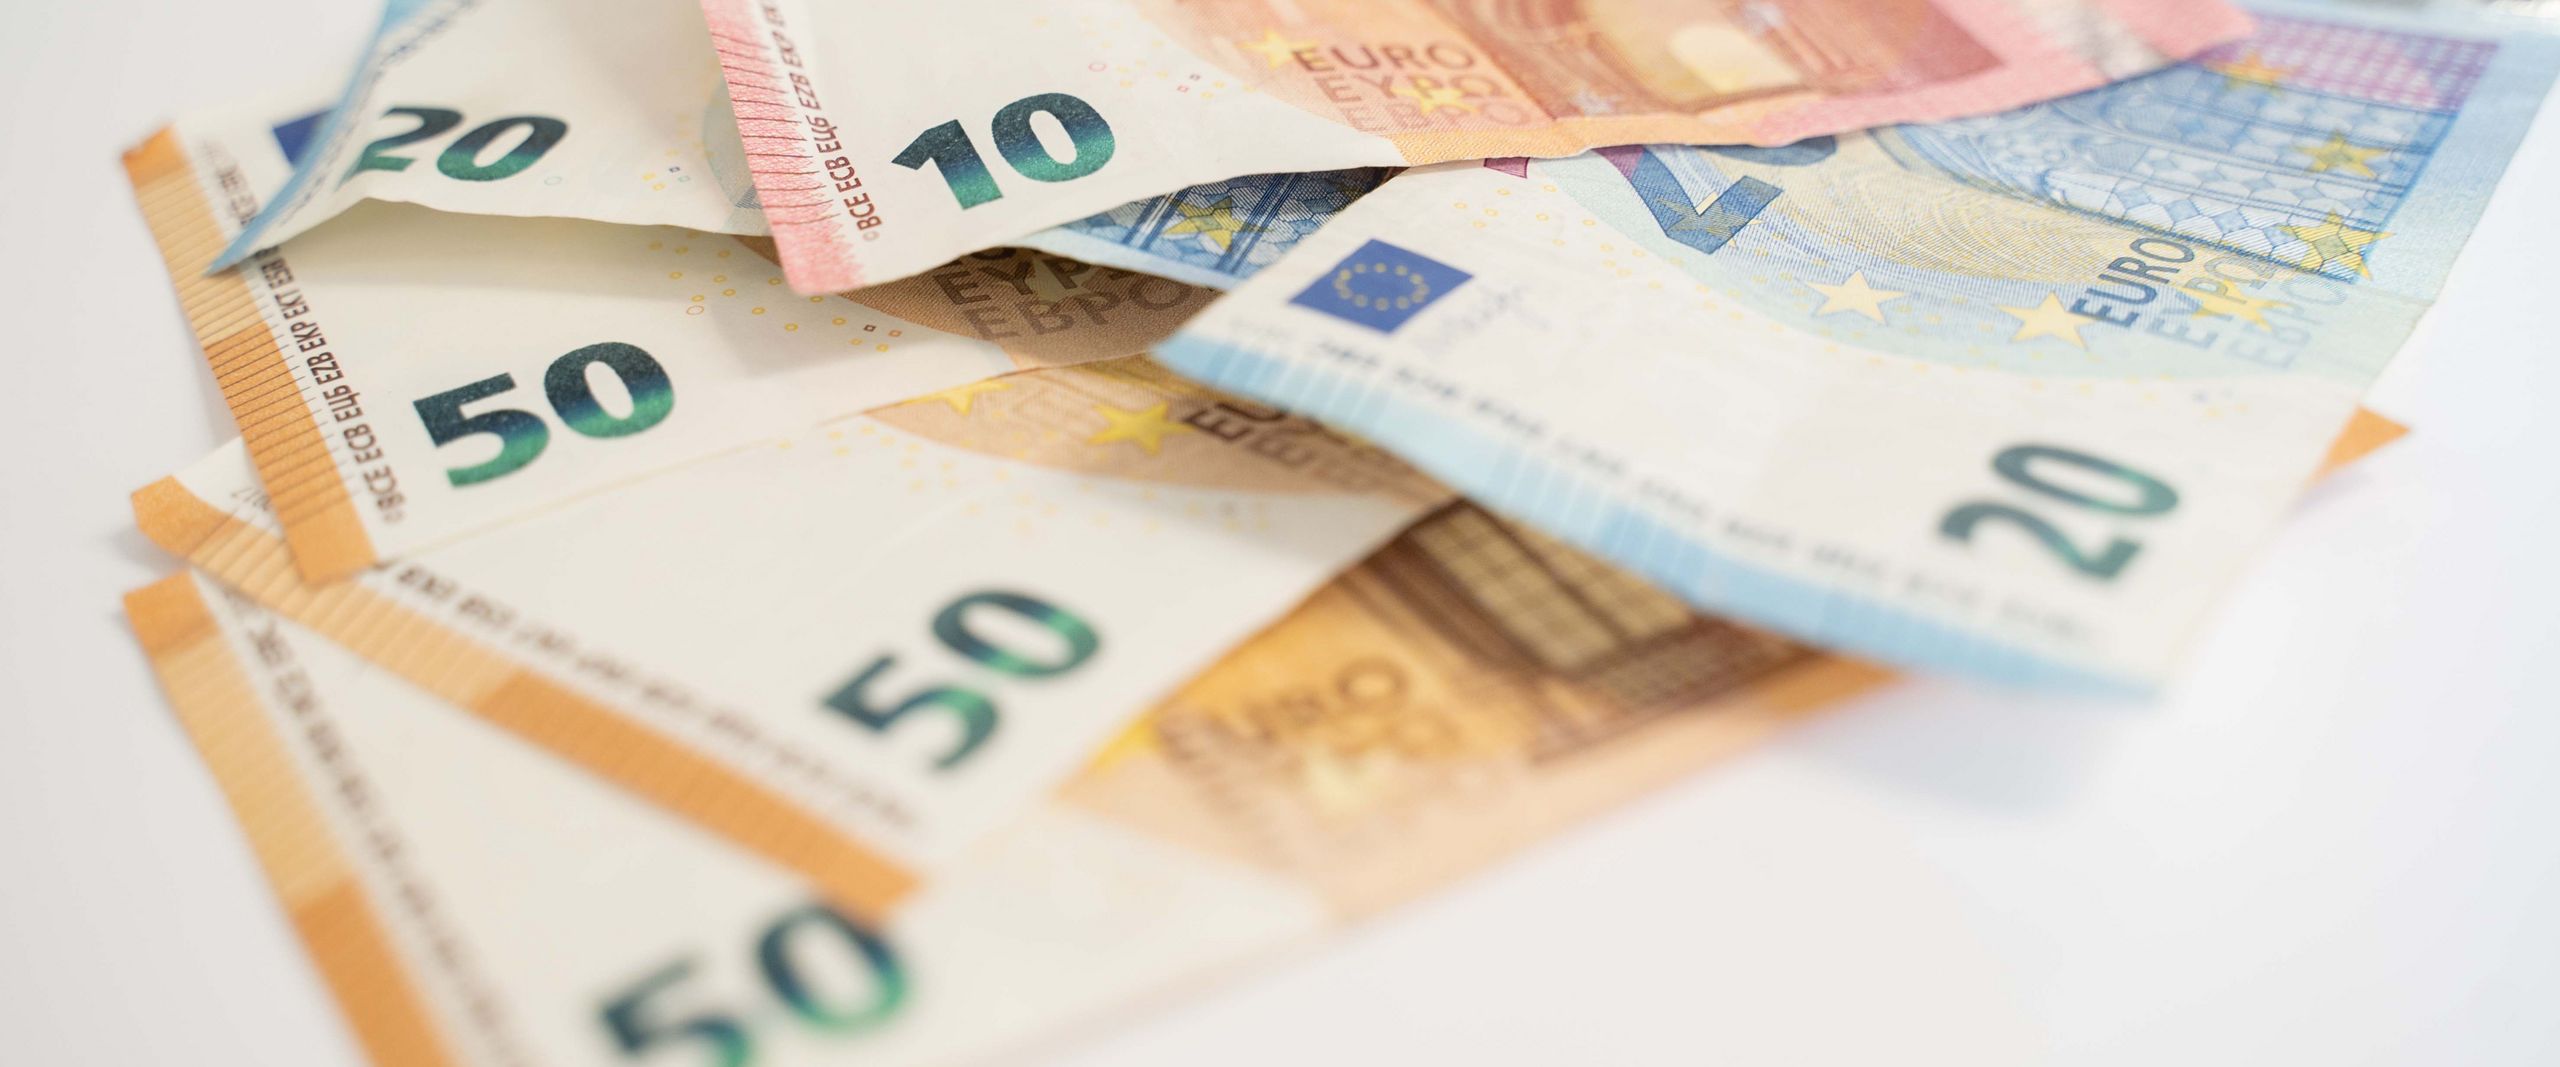 Euroscheine liegen aufeinander, insgesamt 200 Euro